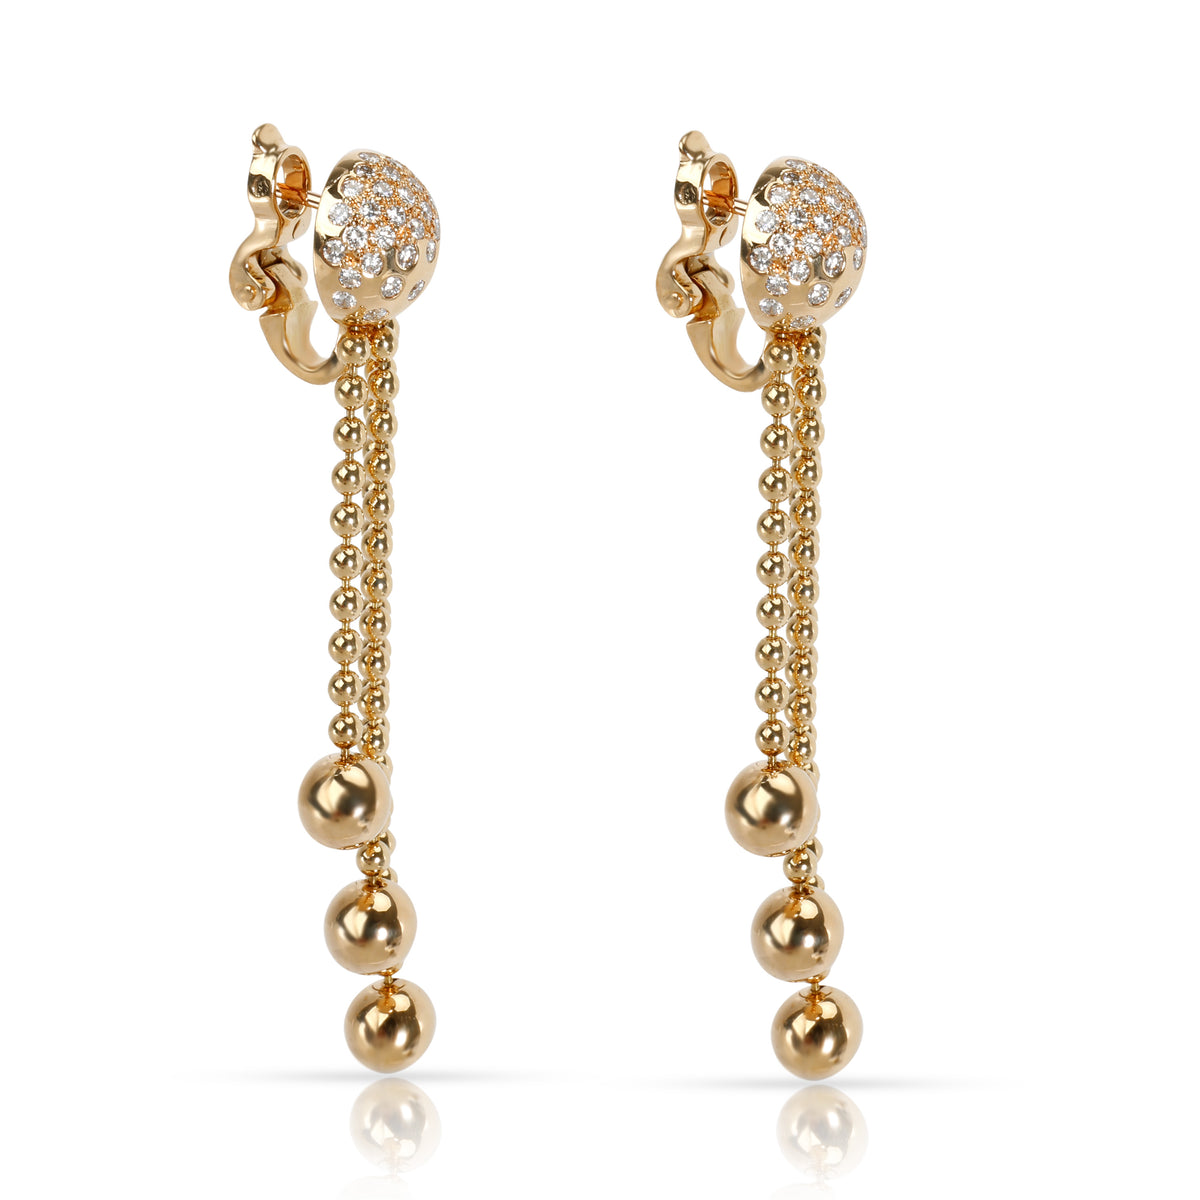 Cartier Draperie Diamond Earrings in 18K Yellow Gold 0.75 CTW